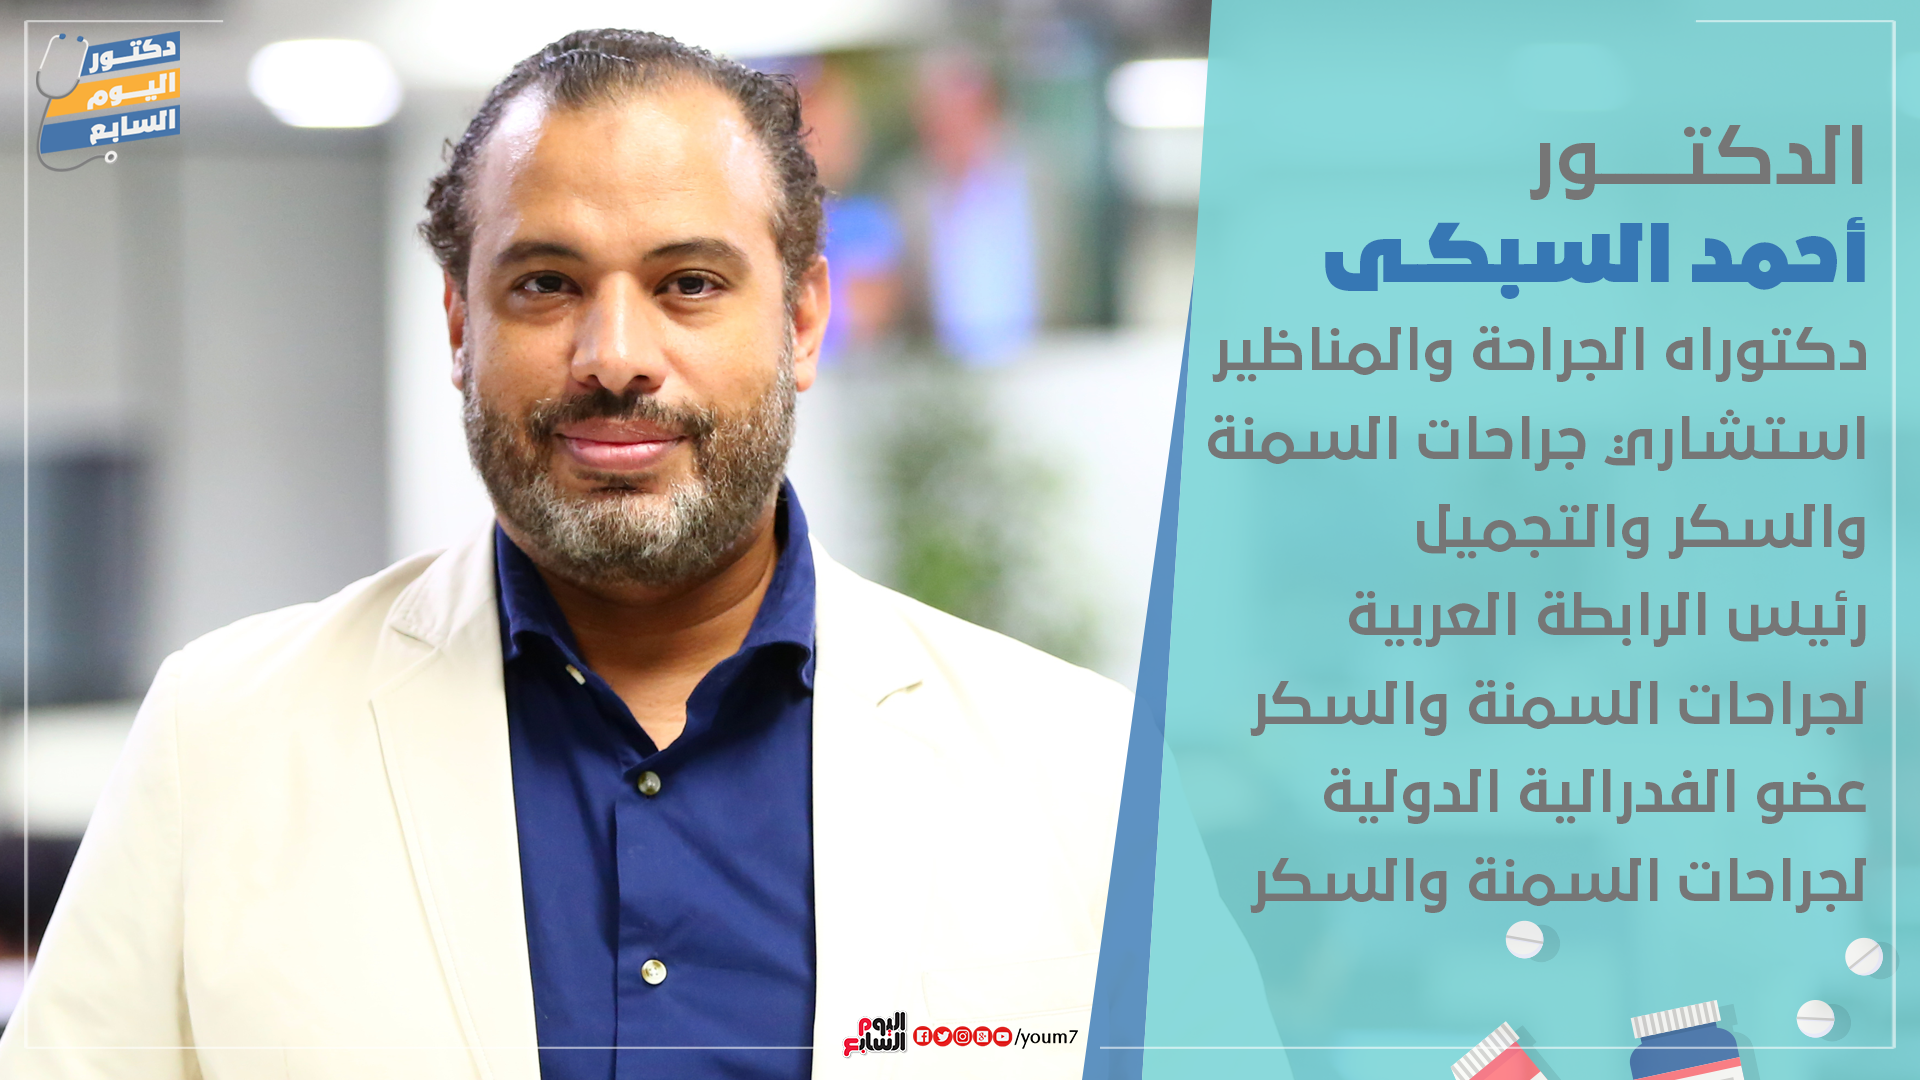 الدكتور أحمد السبكى دكتوراه الجراحة والمناظير استشارى جراحات السمنة والسكر والتجميل 